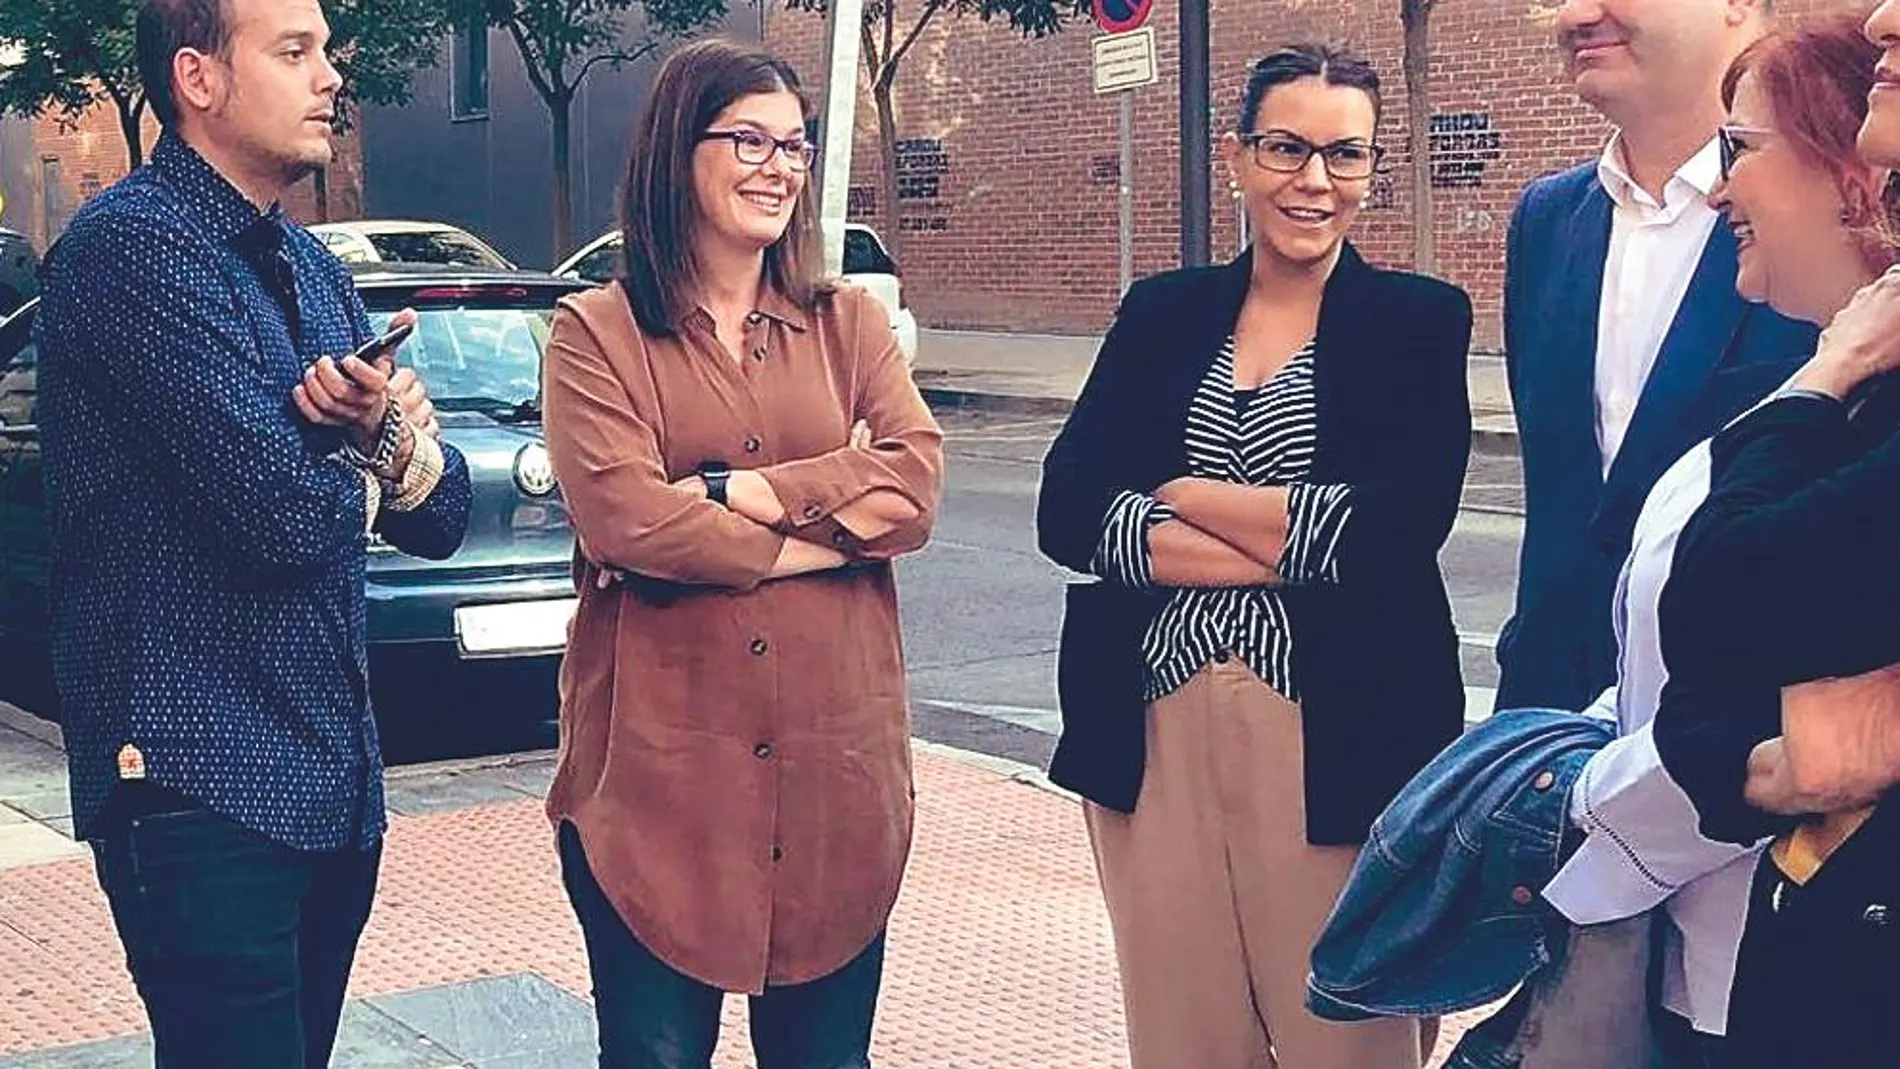 La alcaldesa de Móstoles, ayer, con varios vecinos, en una imagen compartida en sus redes sociales